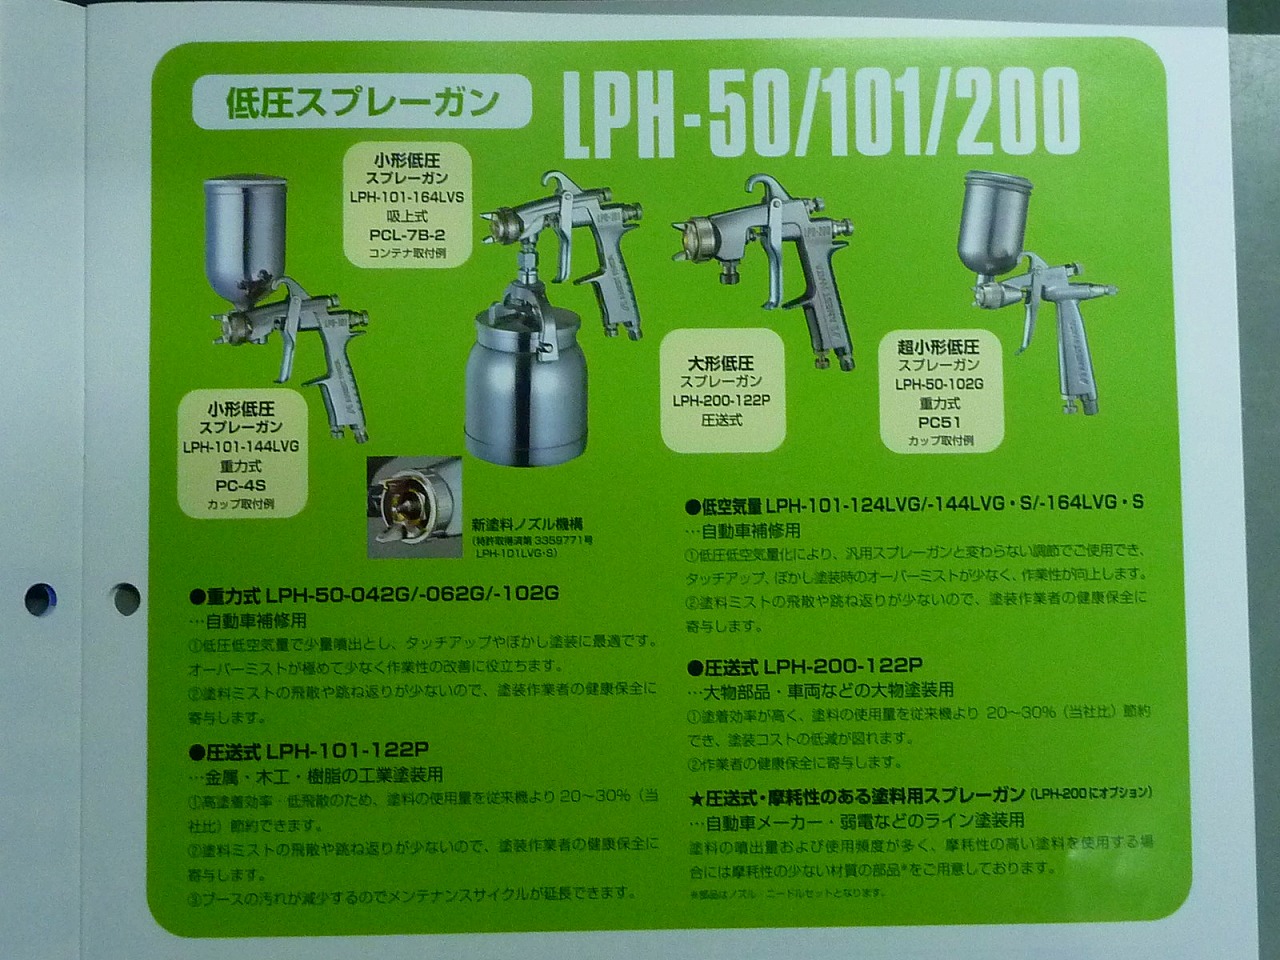 アネスト岩田 低圧空気量低圧スプレーガン重力式LPH-101-144LVG | 商品 